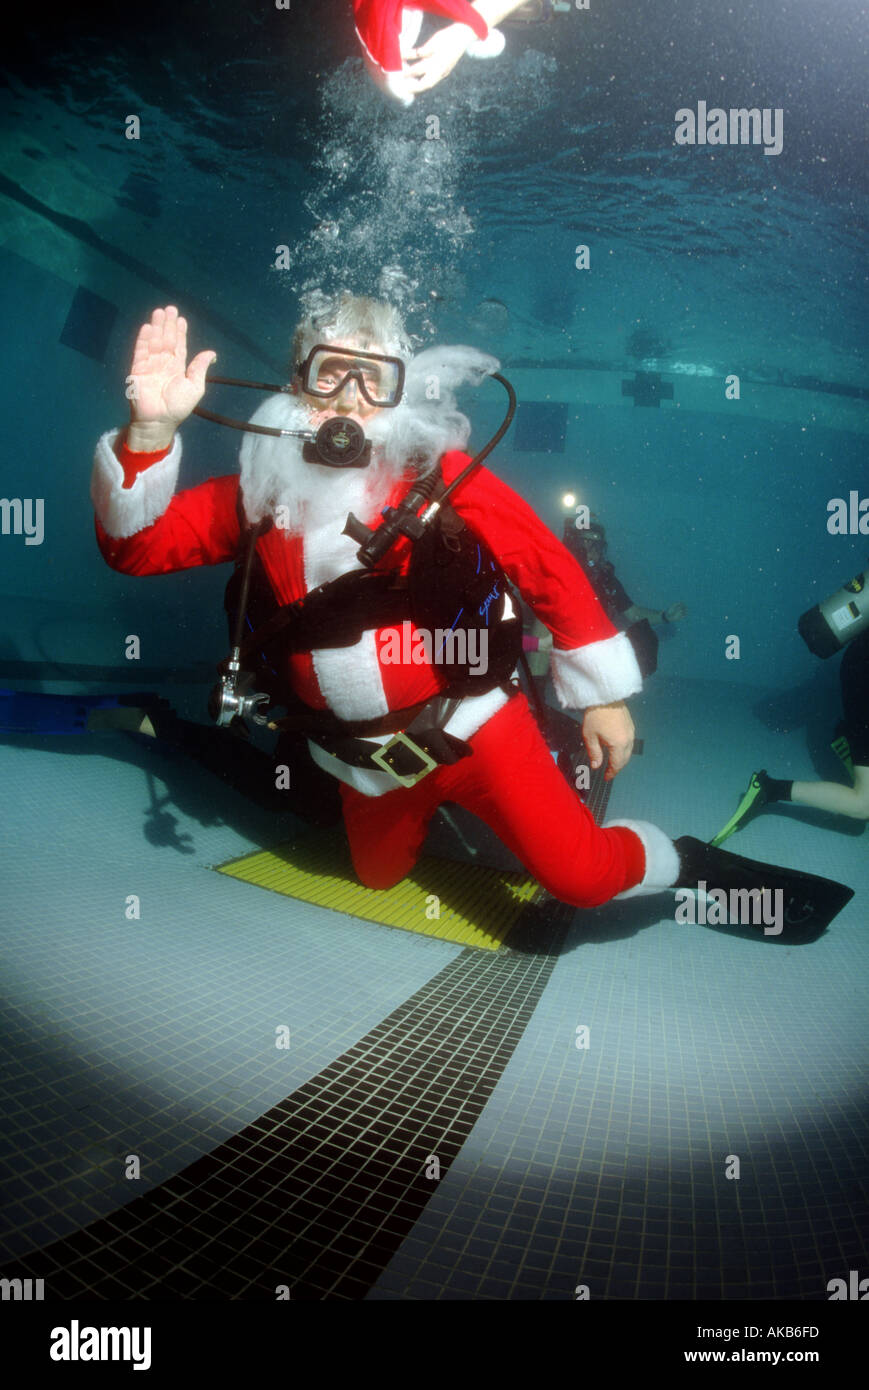 Dans cette piscine YMCA Santa Claus nage vagues et perd son chapeau mais bénéficie toujours de l'esprit sur la Banque D'Images